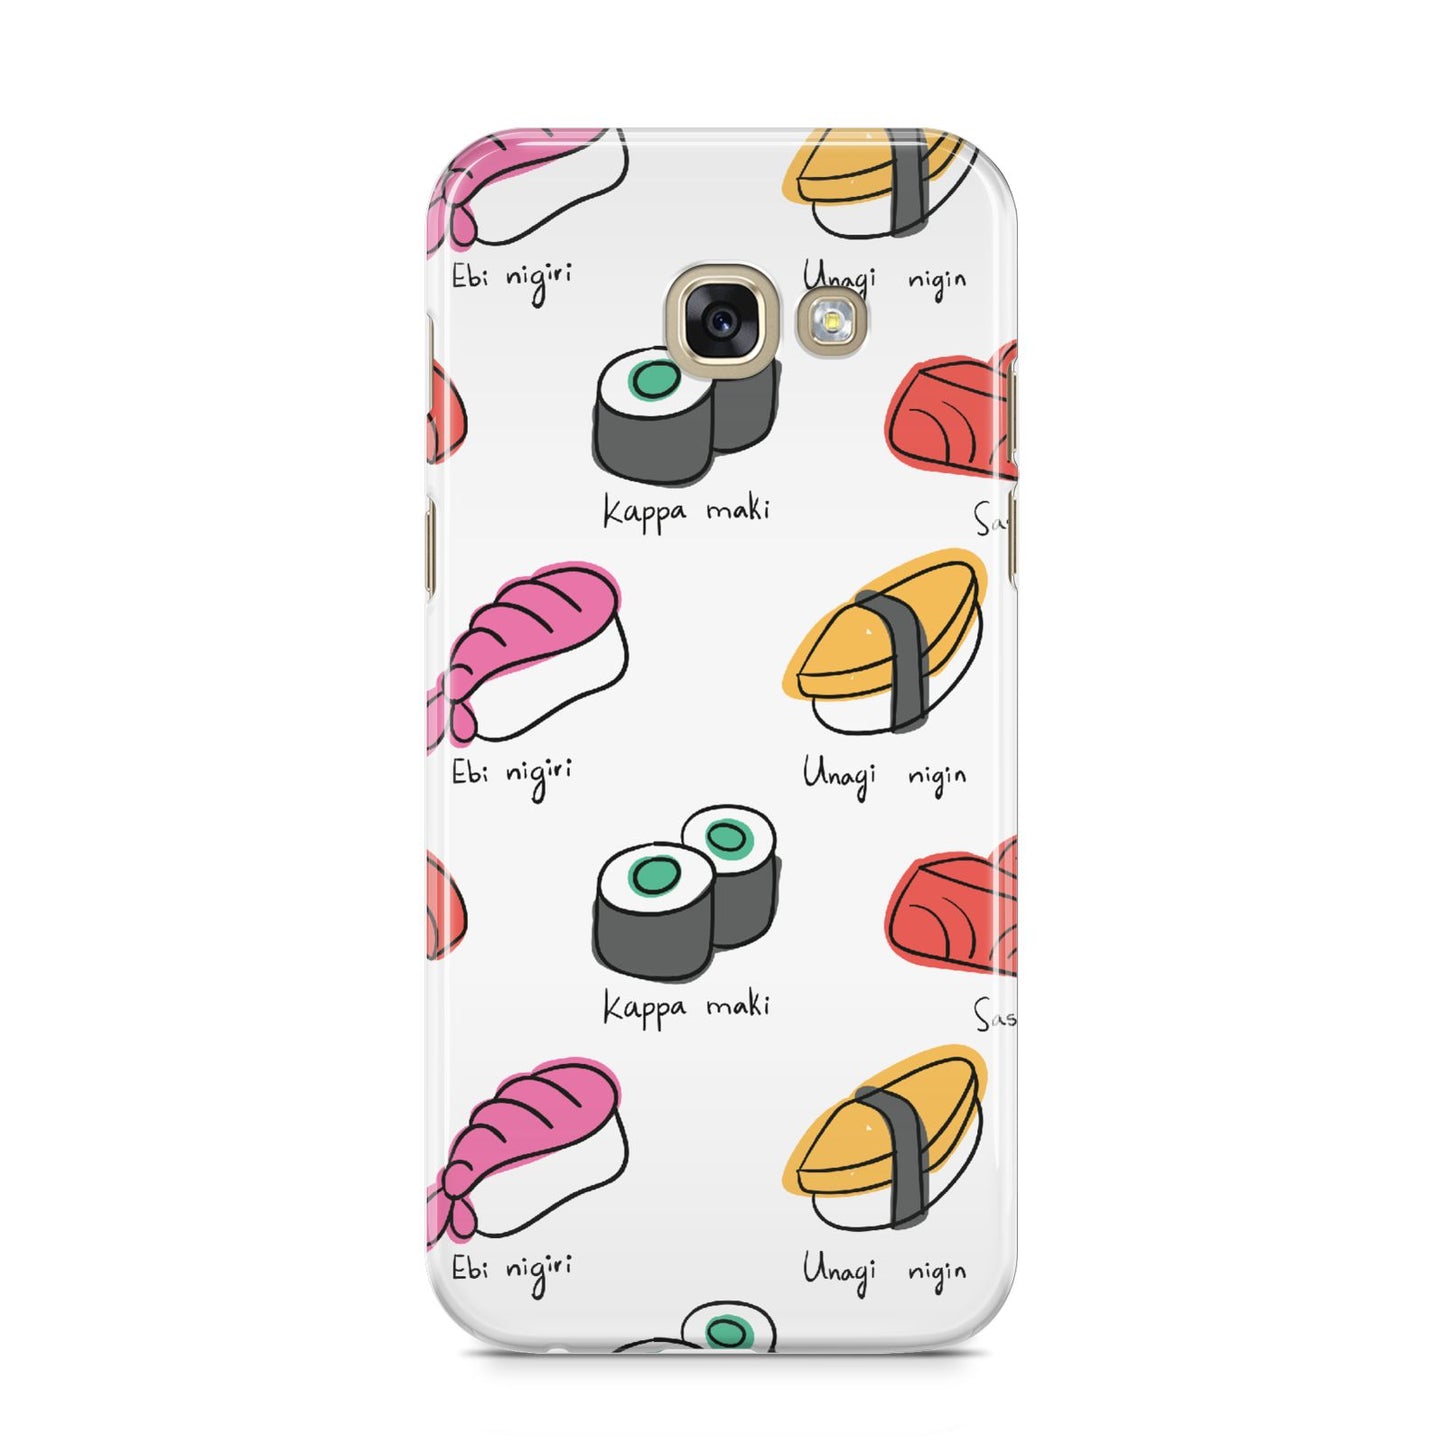 Sashimi Kappa Maki Sushi Samsung Galaxy A5 2017 Case on gold phone